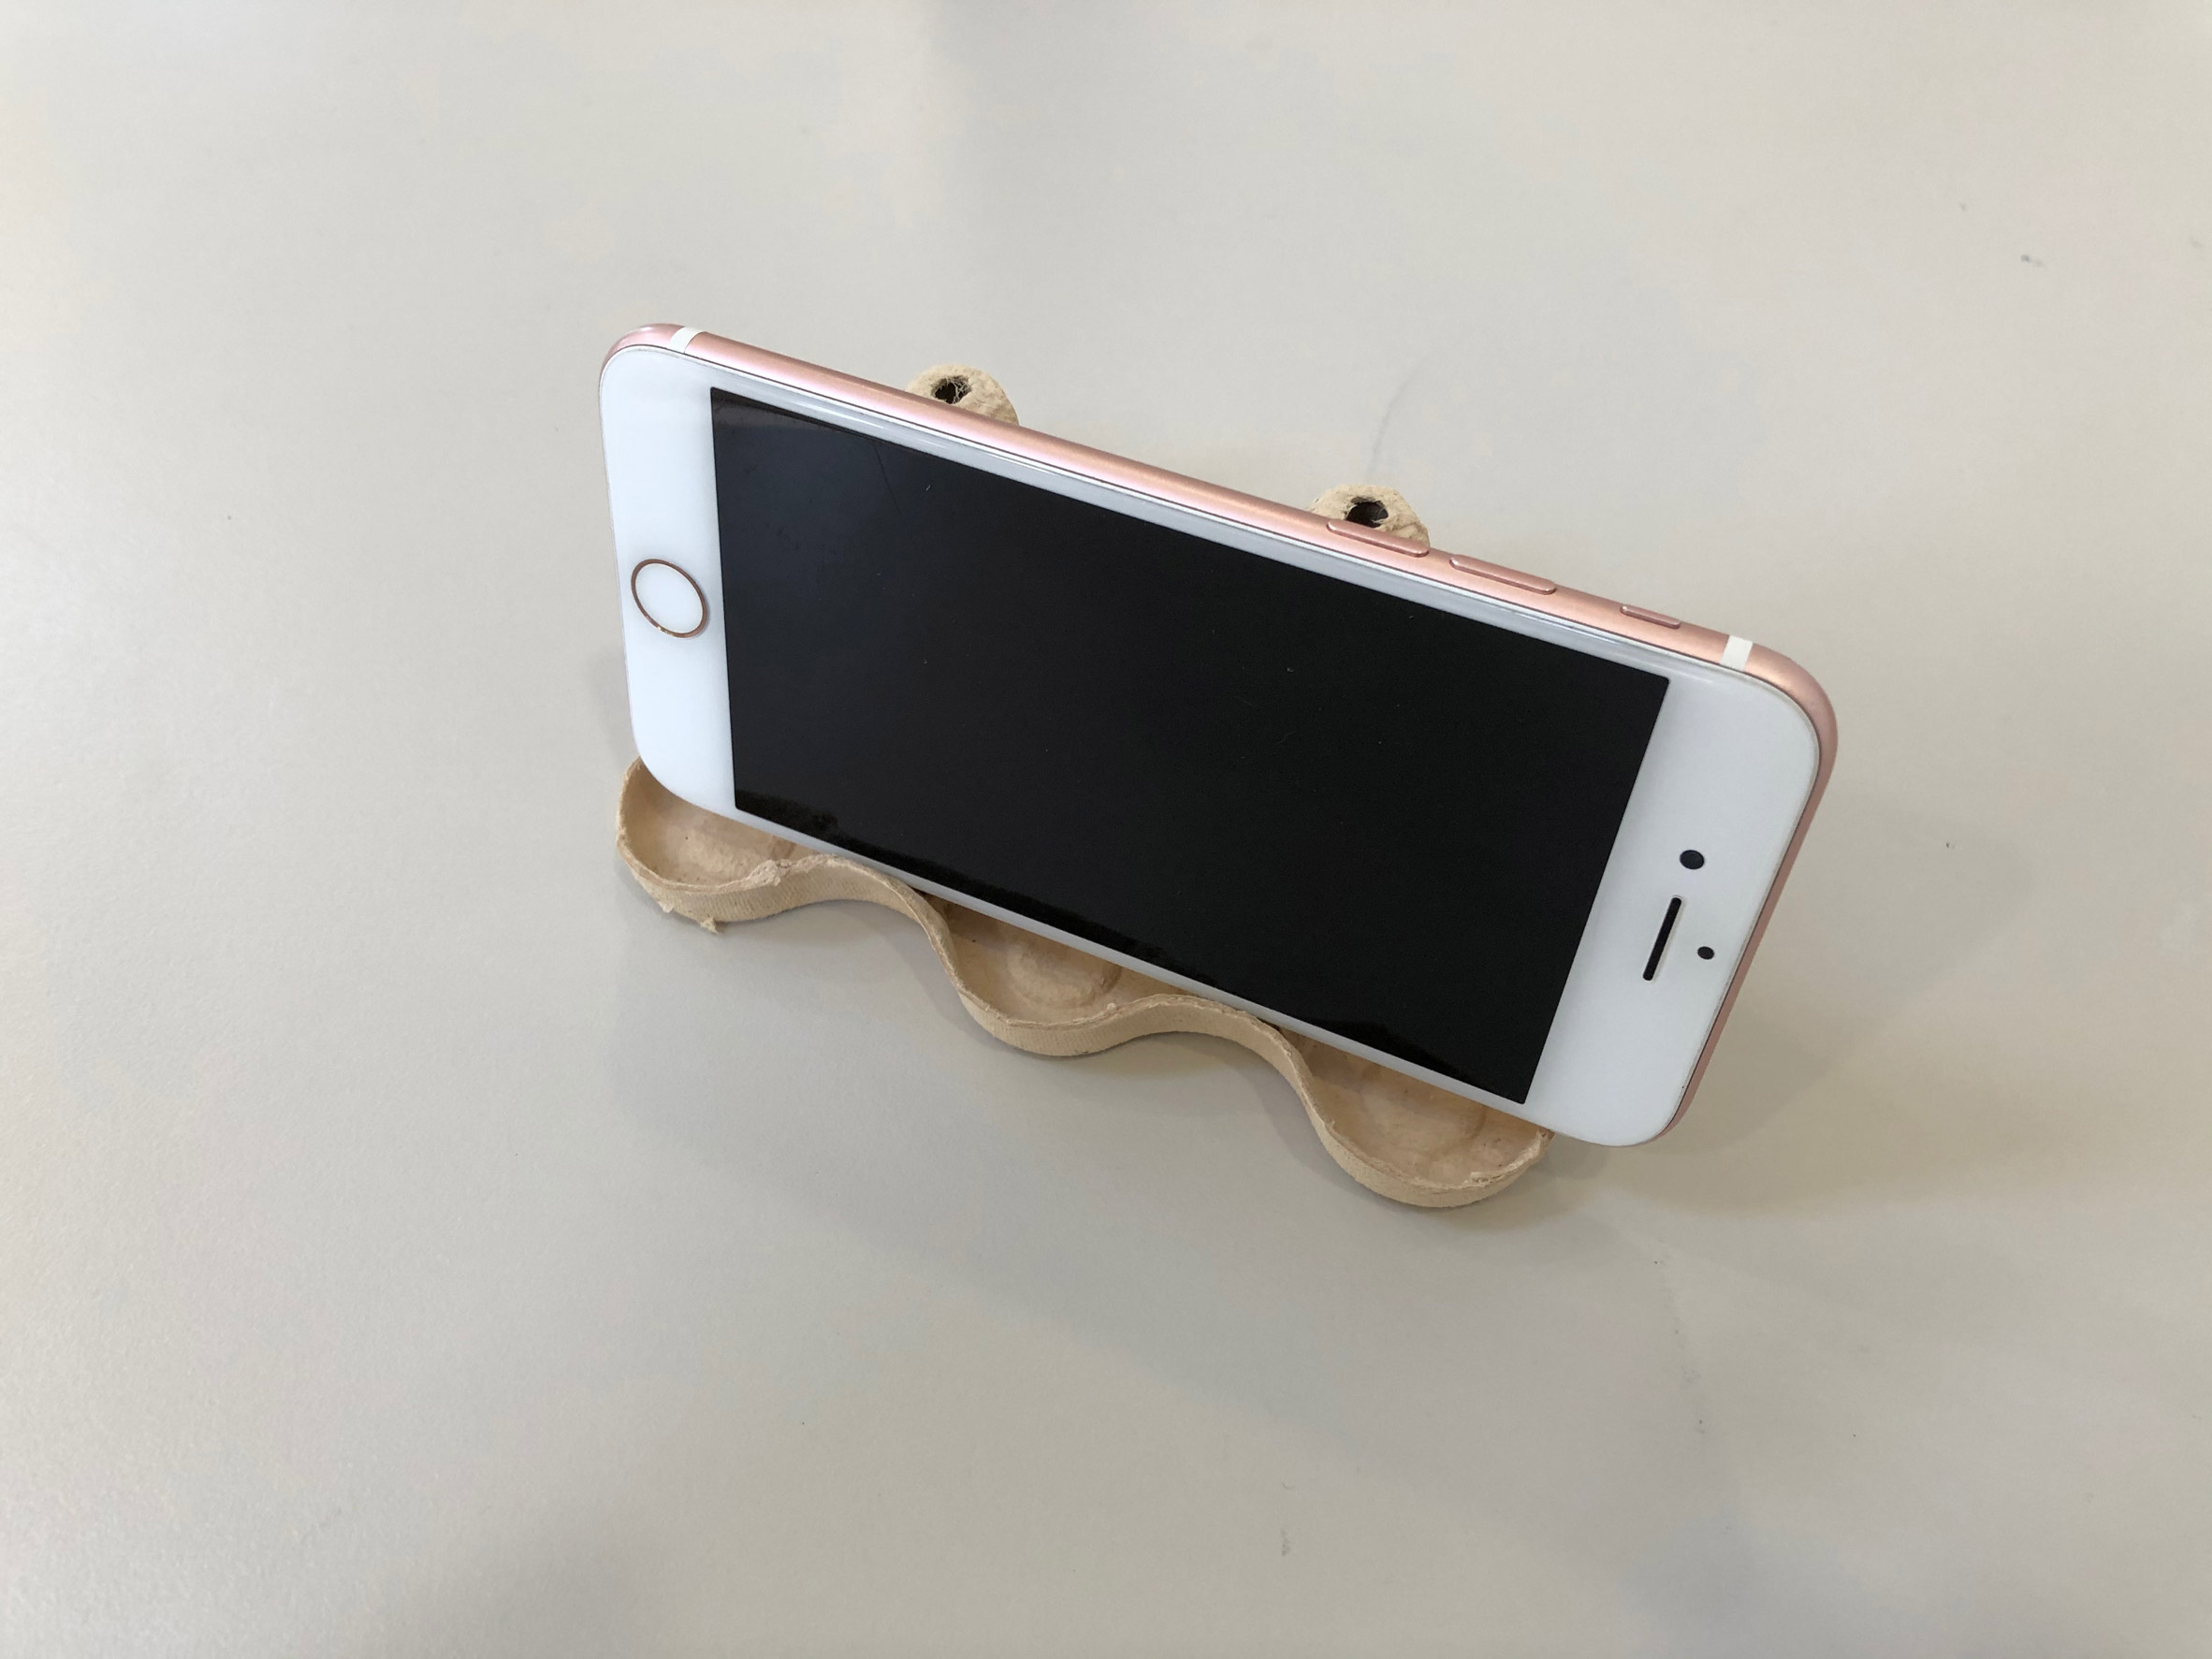 DIY: crie um suporte para smartphone com caixa de ovos em 2 minutos!